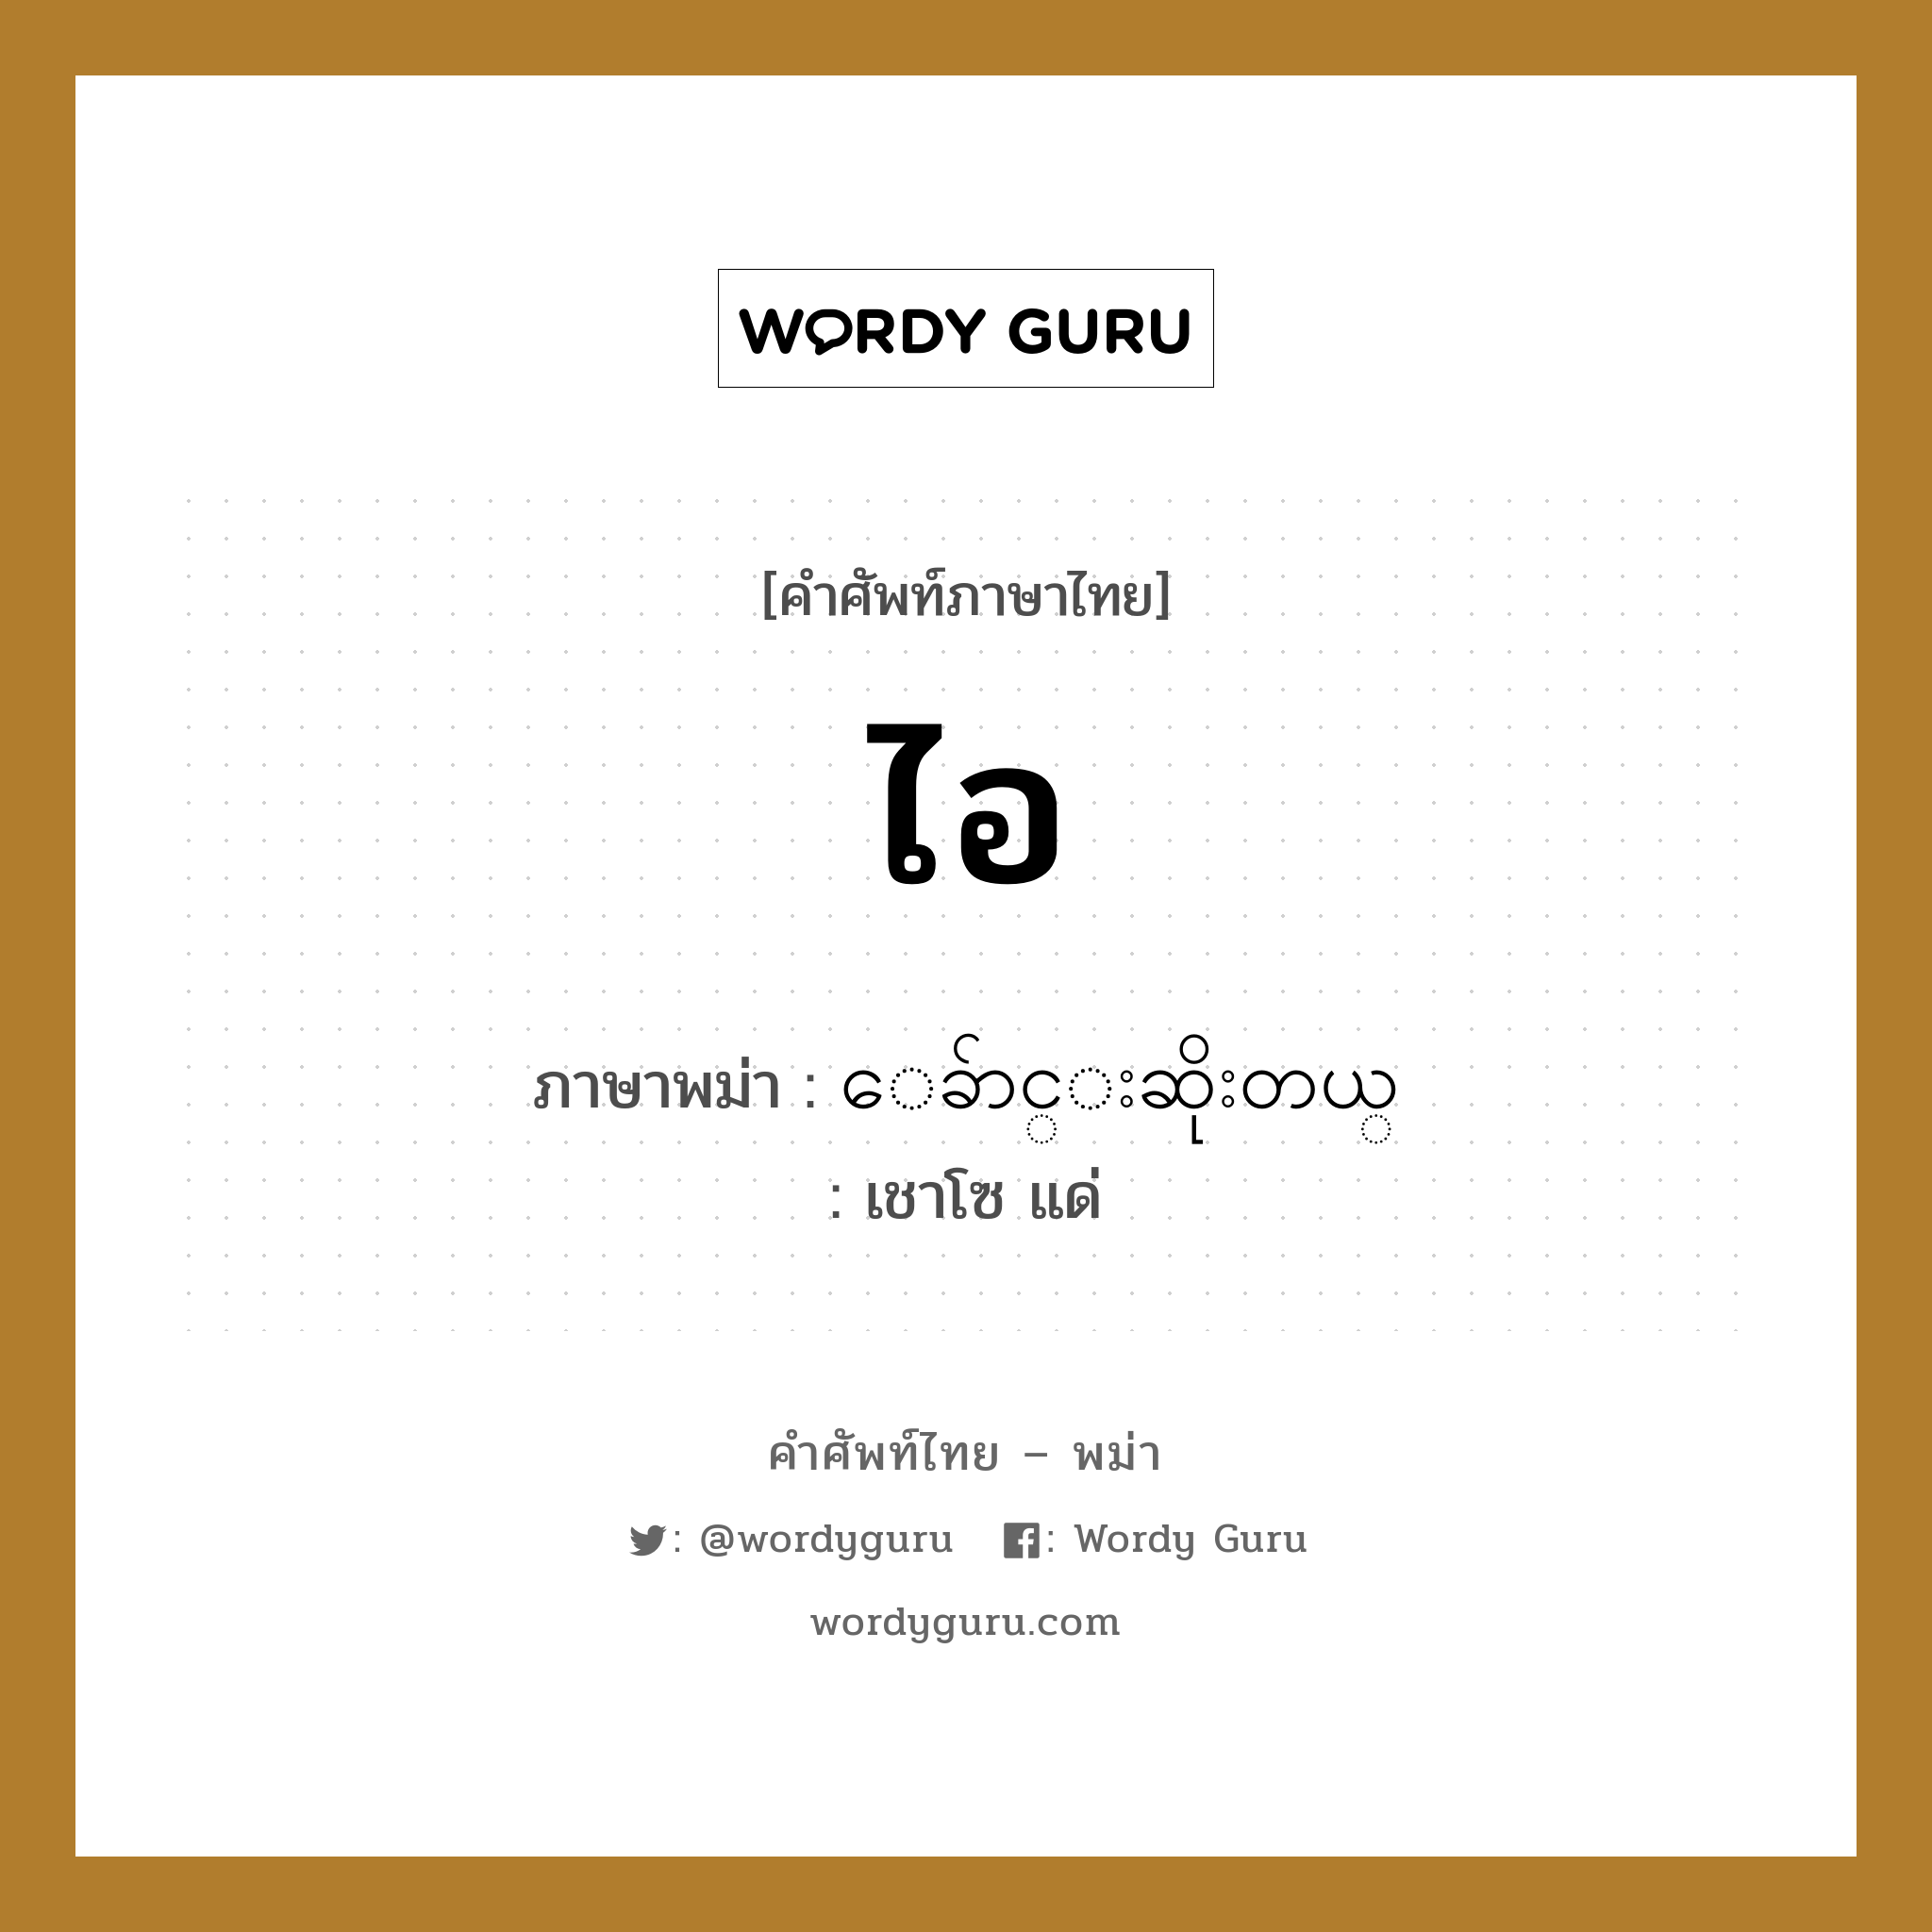 ไอ ภาษาพม่าคืออะไร, คำศัพท์ภาษาไทย - พม่า ไอ ภาษาพม่า ေခ်ာင္းဆိုးတယ္ หมวด หมวดโรคและยารักษา เชาโซ แด่ หมวด หมวดโรคและยารักษา